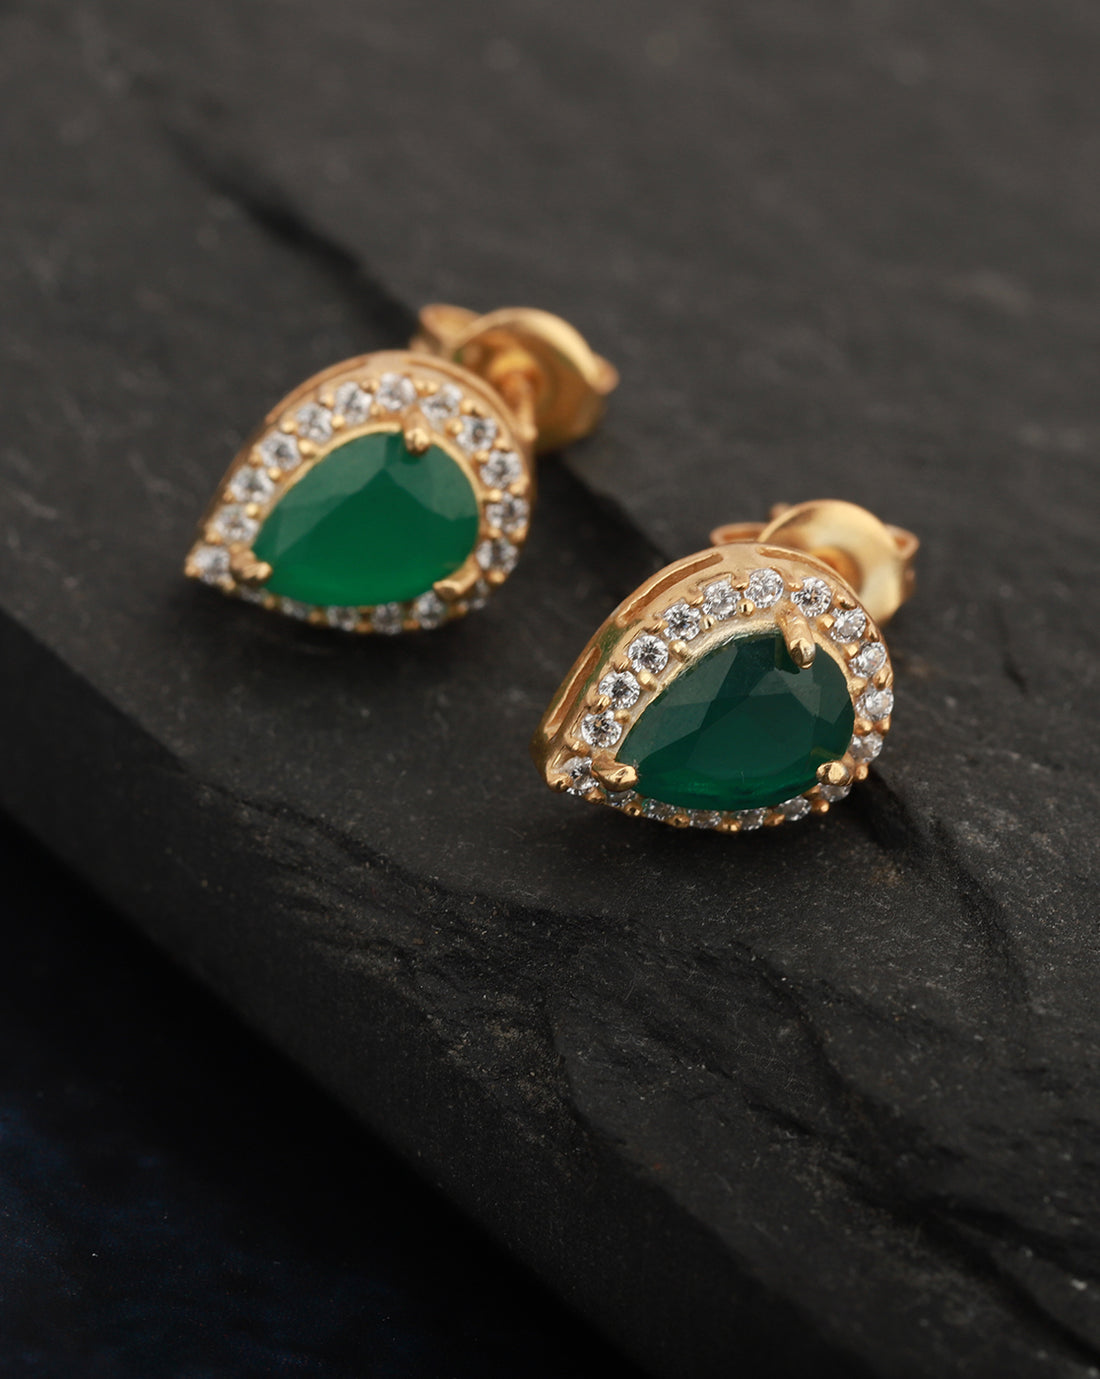 Carlton London Gold Plated Green Stone Teardrop Stud Earring For Women